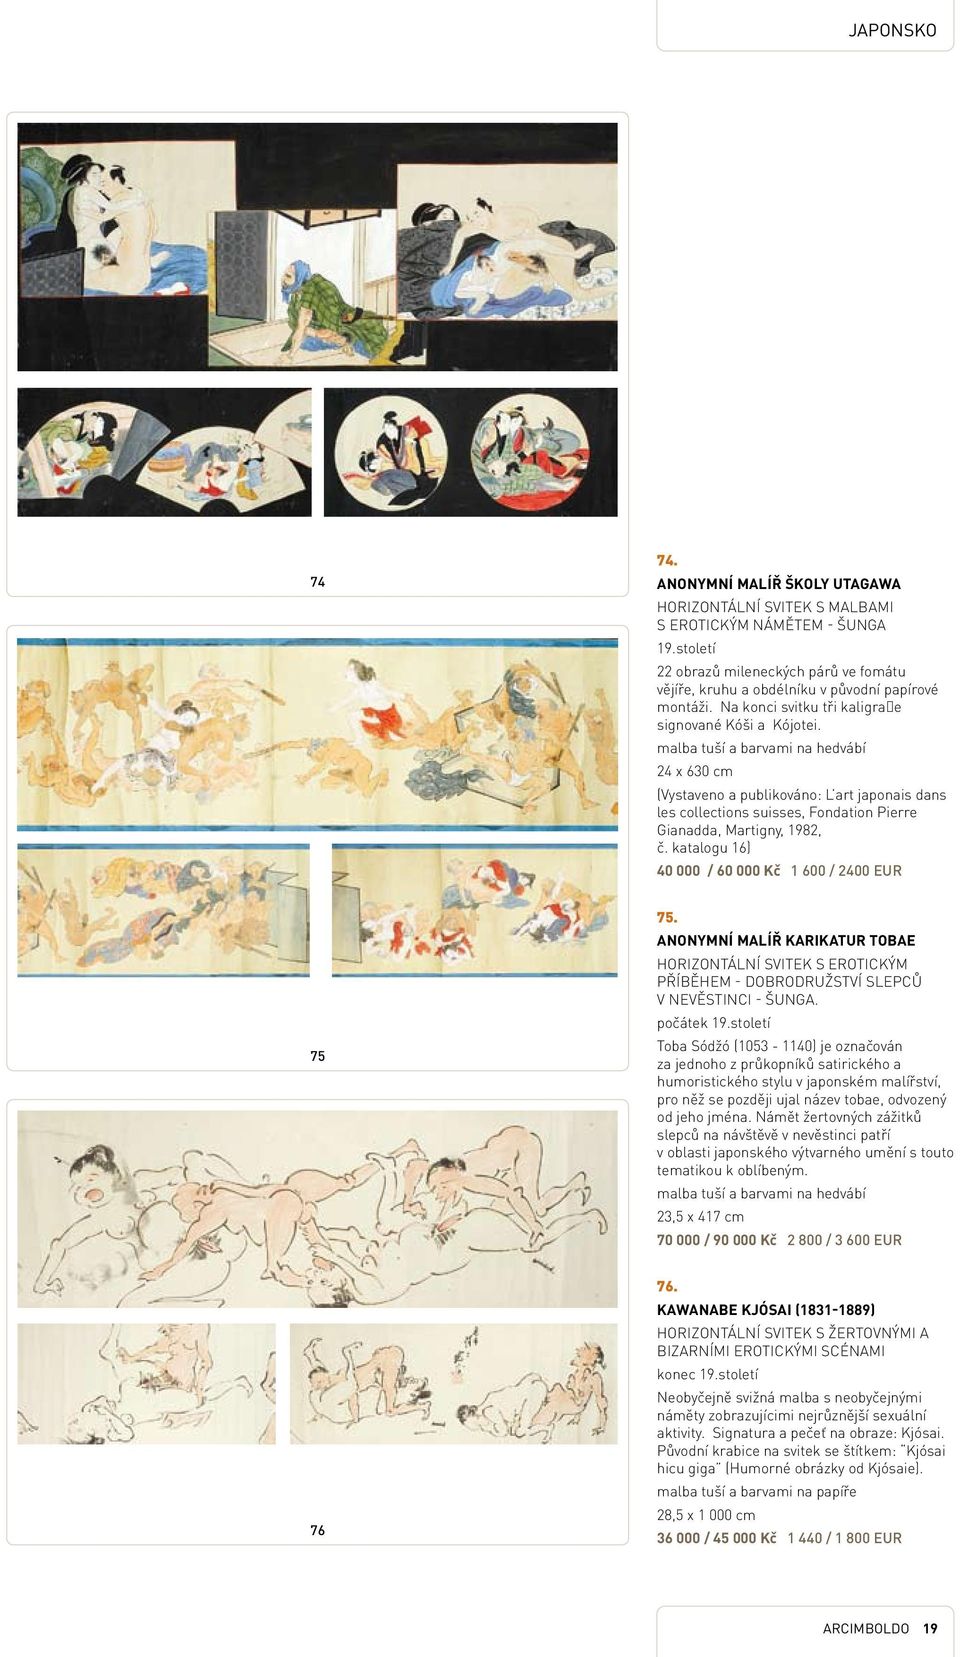 malba tuší a barvami na hedvábí 24 x 630 cm (Vystaveno a publikováno: L art japonais dans les collections suisses, Fondation Pierre Gianadda, Martigny, 1982, č.